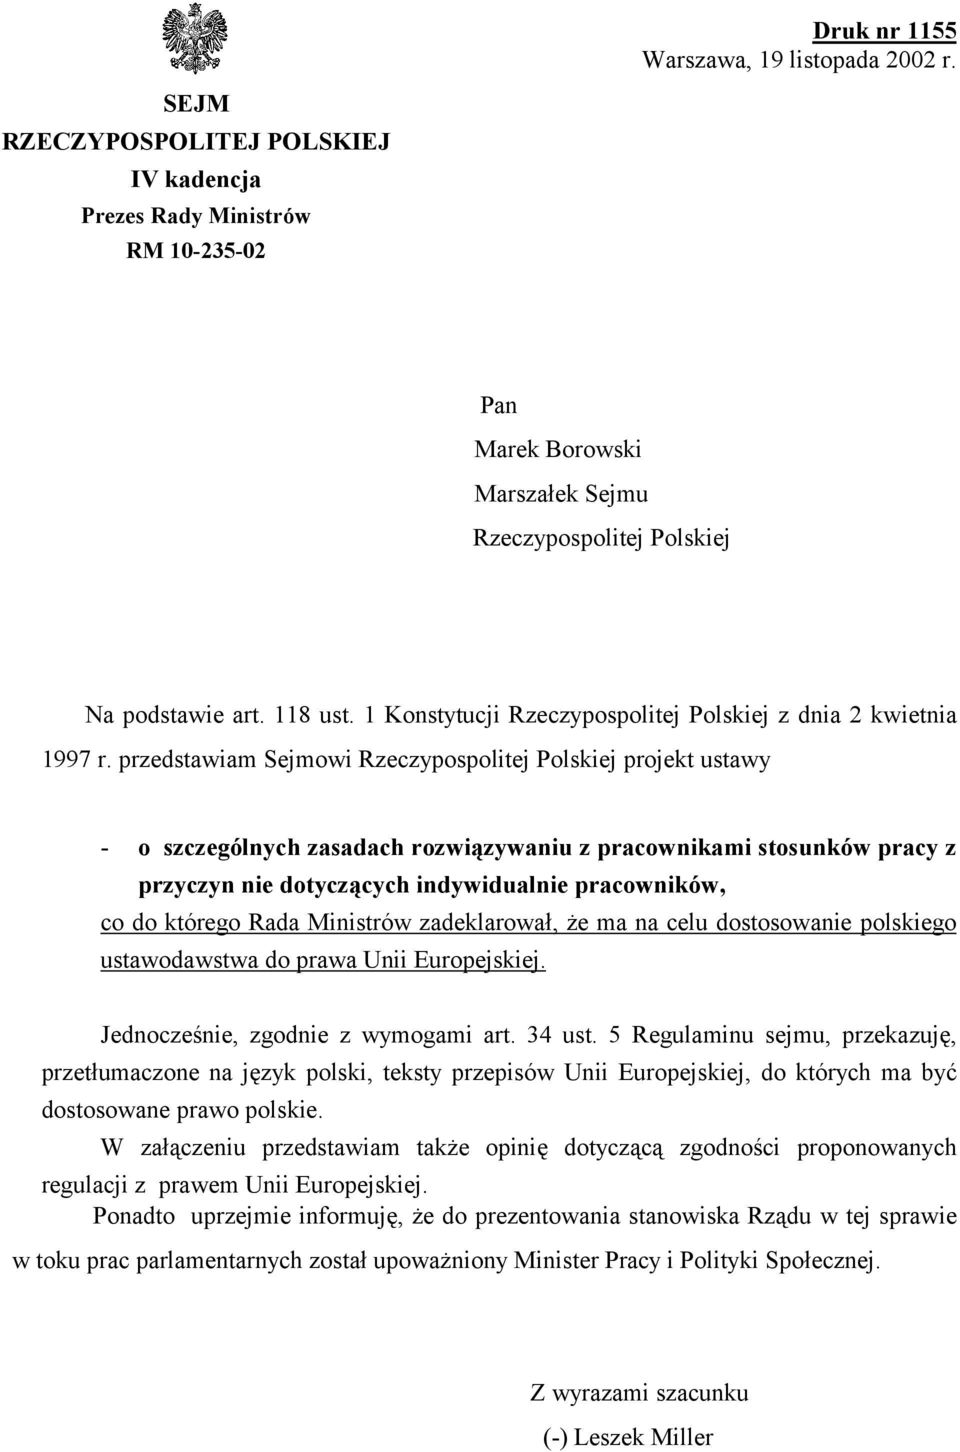 przedstawiam Sejmowi Rzeczypospolitej Polskiej projekt ustawy - o szczególnych zasadach rozwiązywaniu z pracownikami stosunków pracy z przyczyn nie dotyczących indywidualnie pracowników, co do